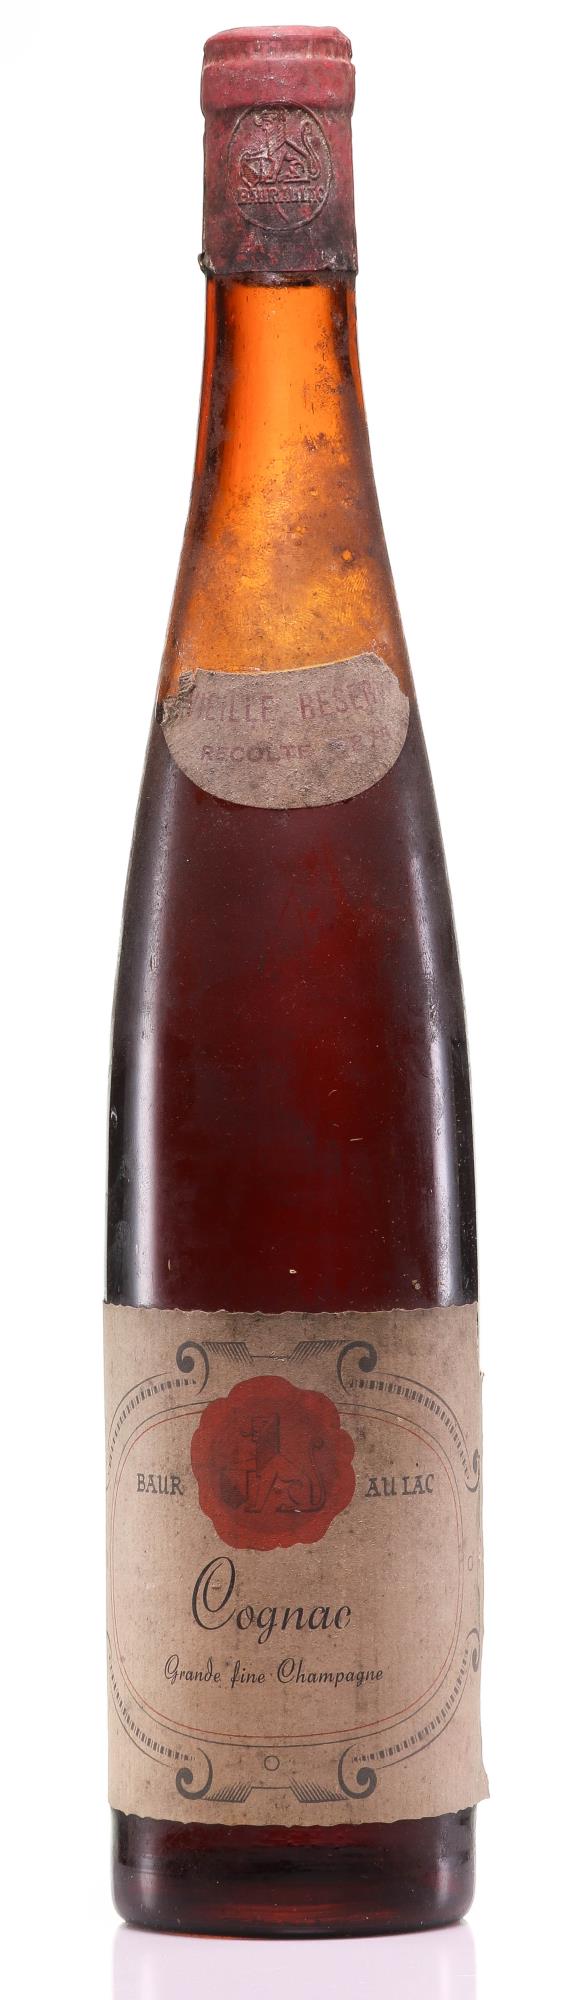 1875 Baur-au-Lac Vieille Réserve Cognac (Grande Fine Champagne Grapes-Récolte) - Rue Pinard